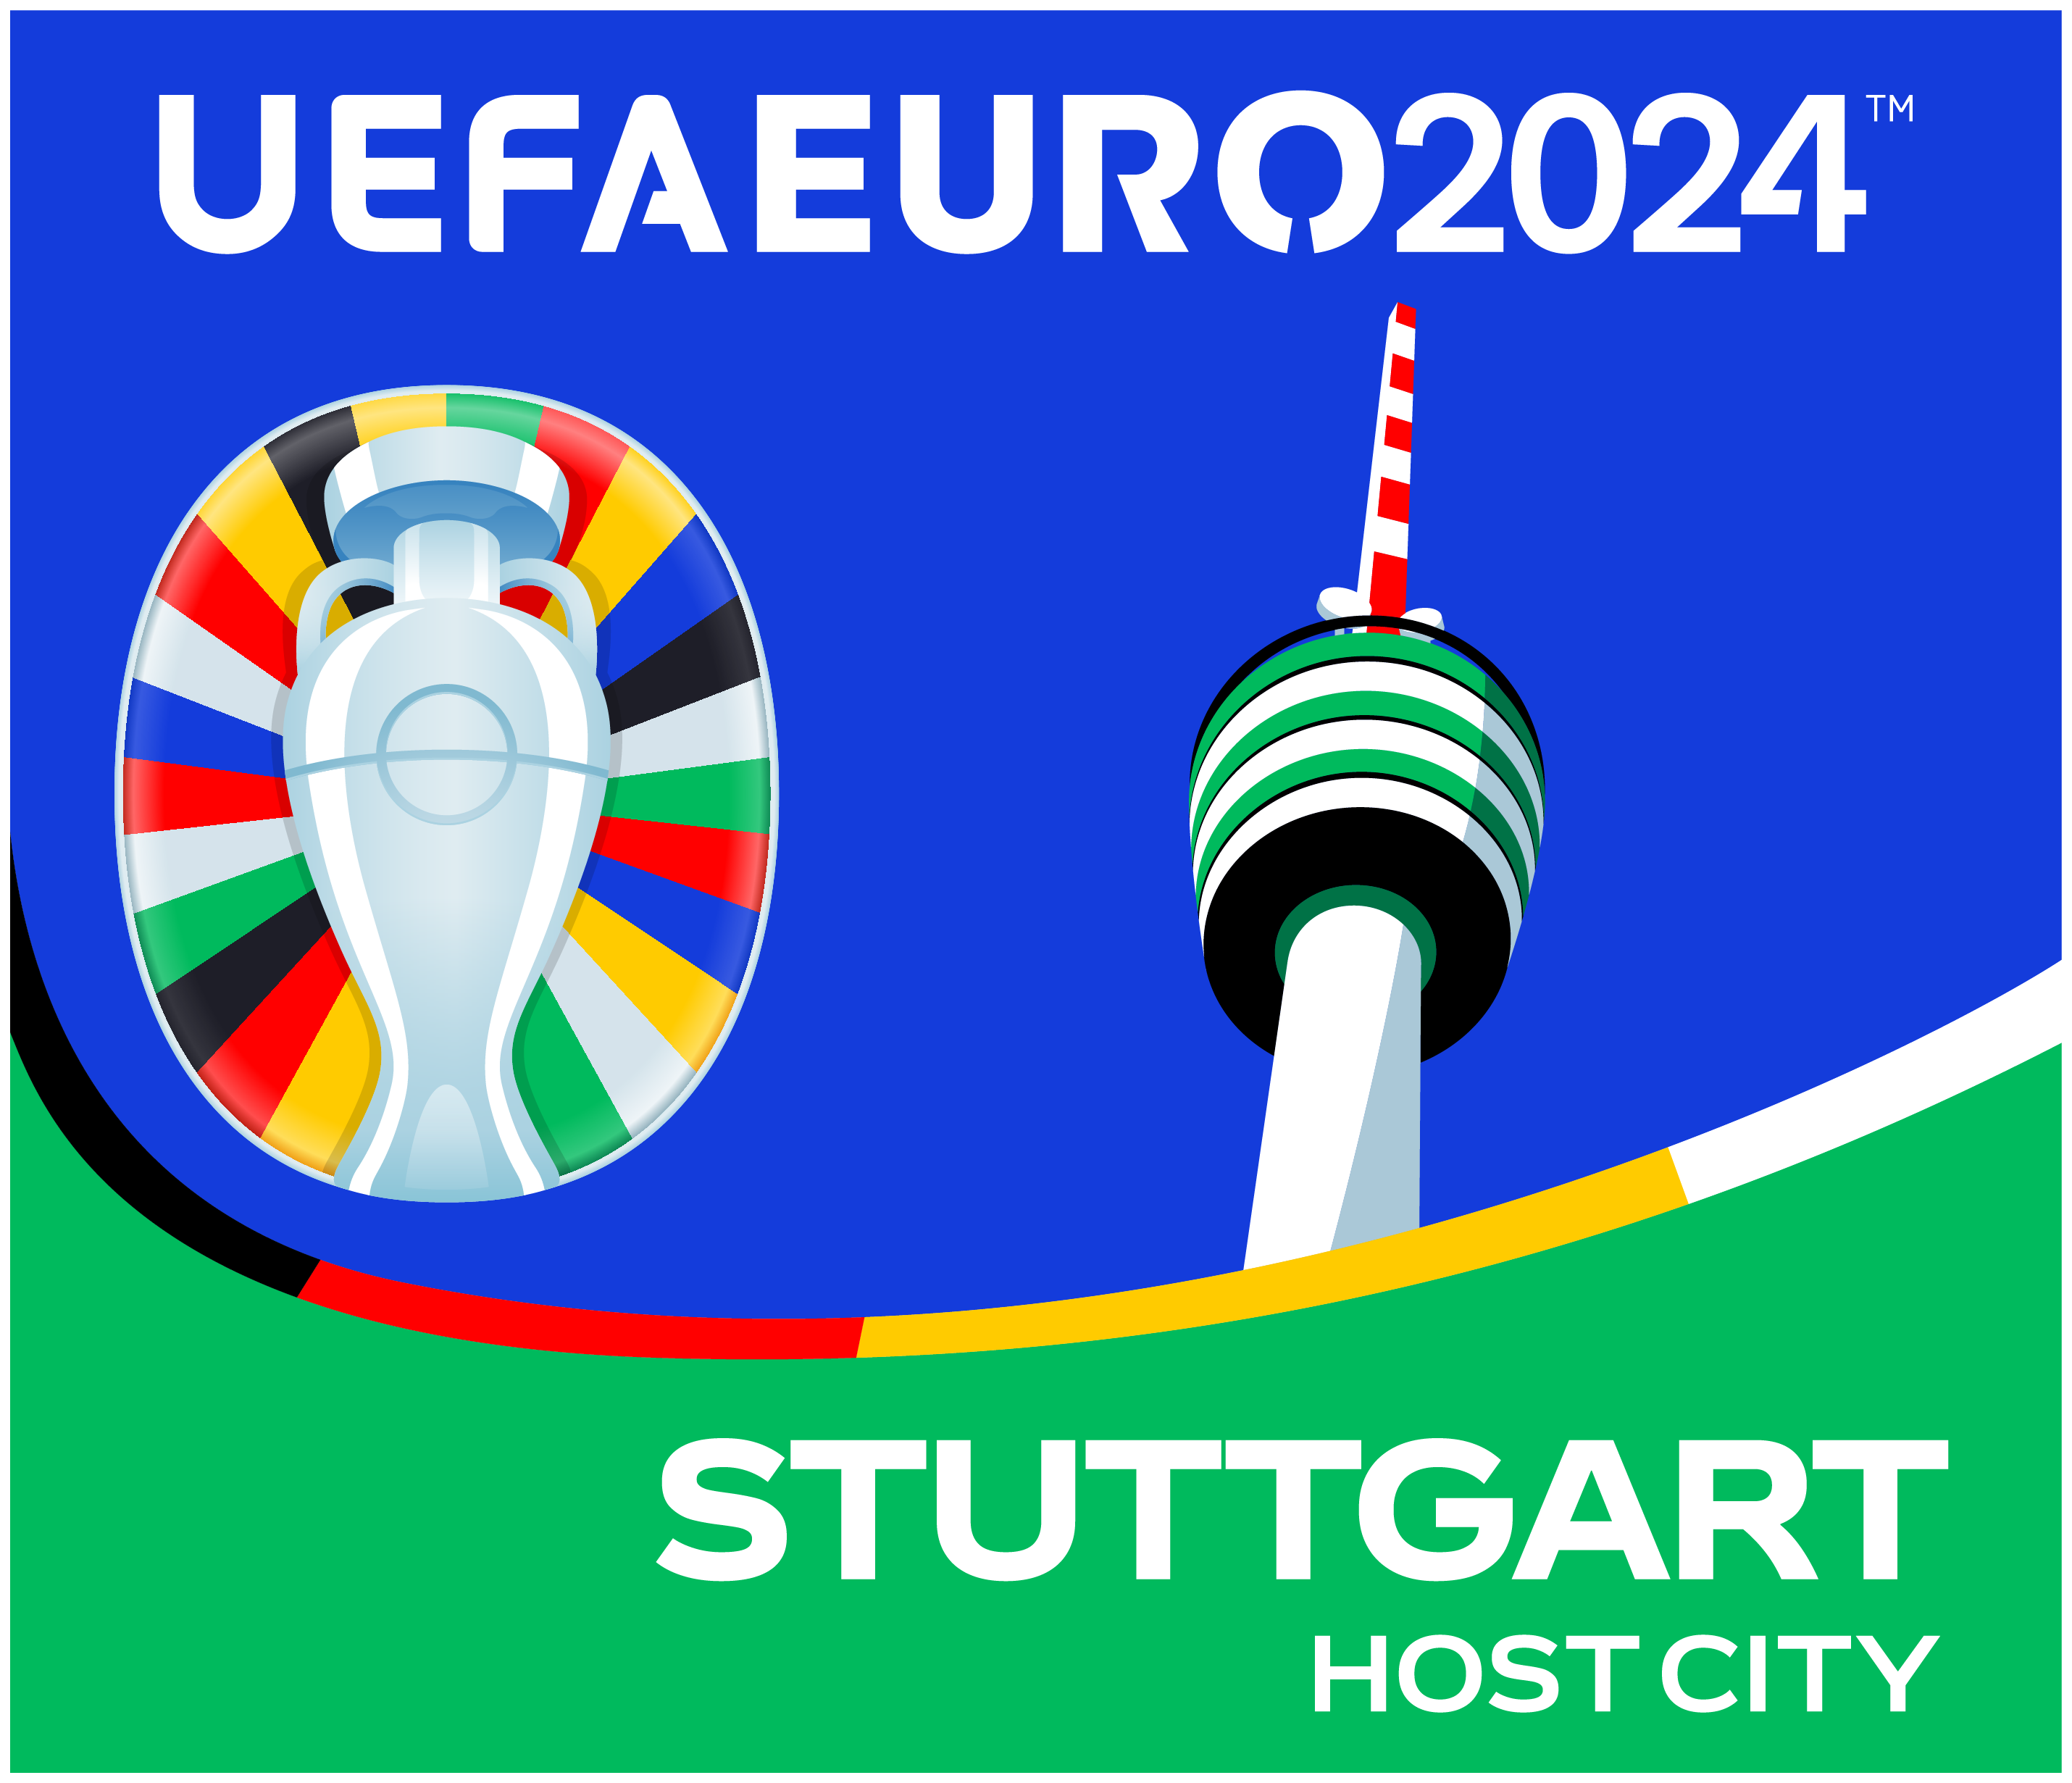 UEFA EURO 2024 Host City Stuttgart